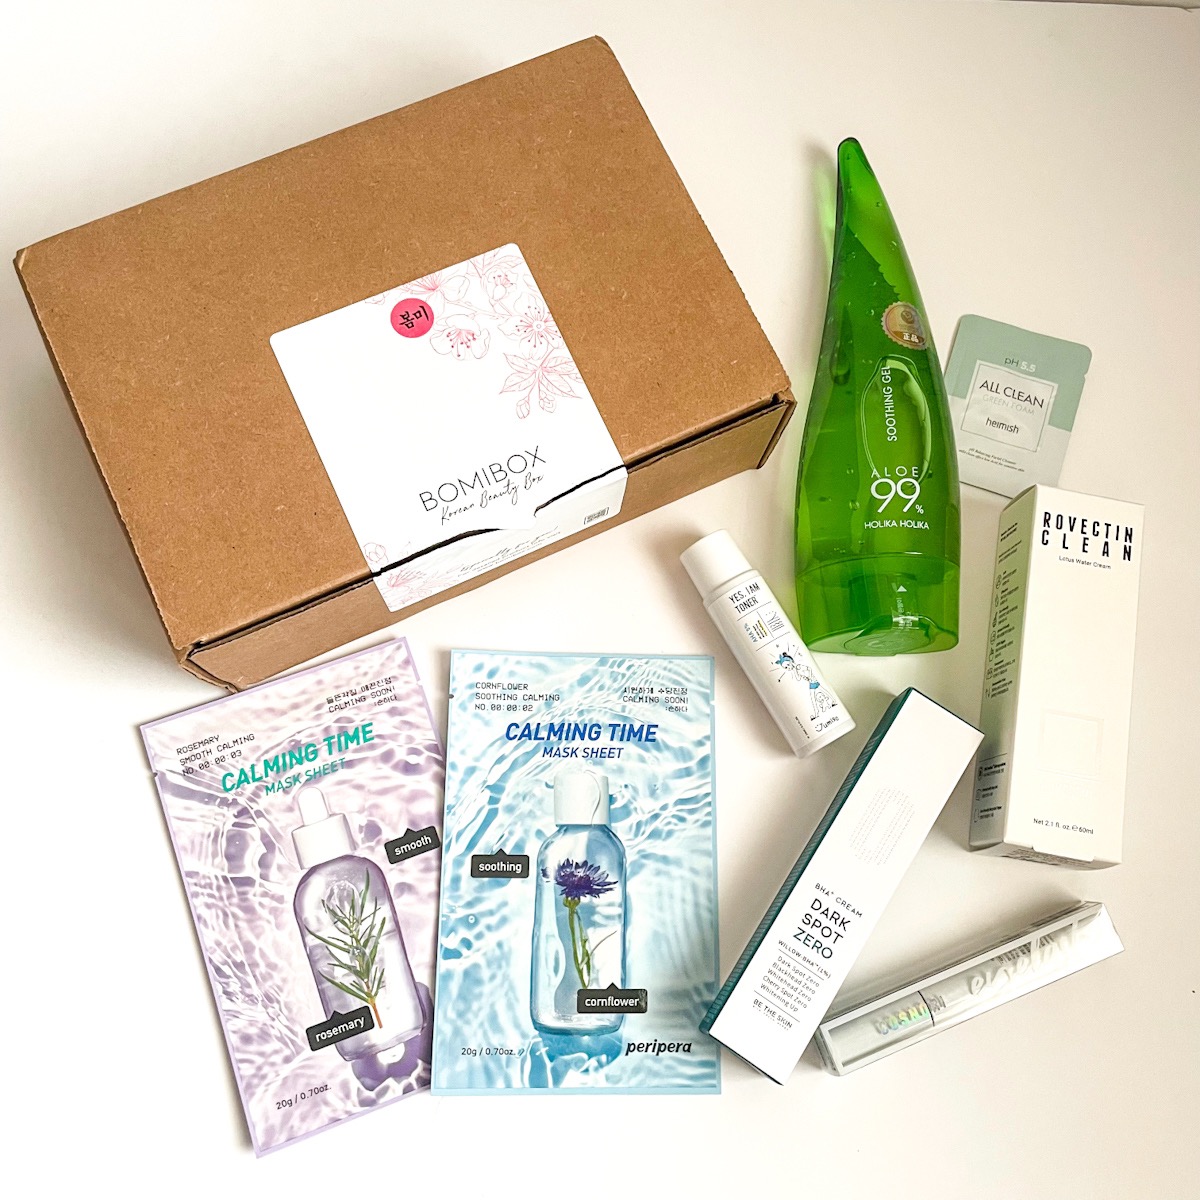 BomiBox K-Beauty Subscription Box “Clean April Rain” Review